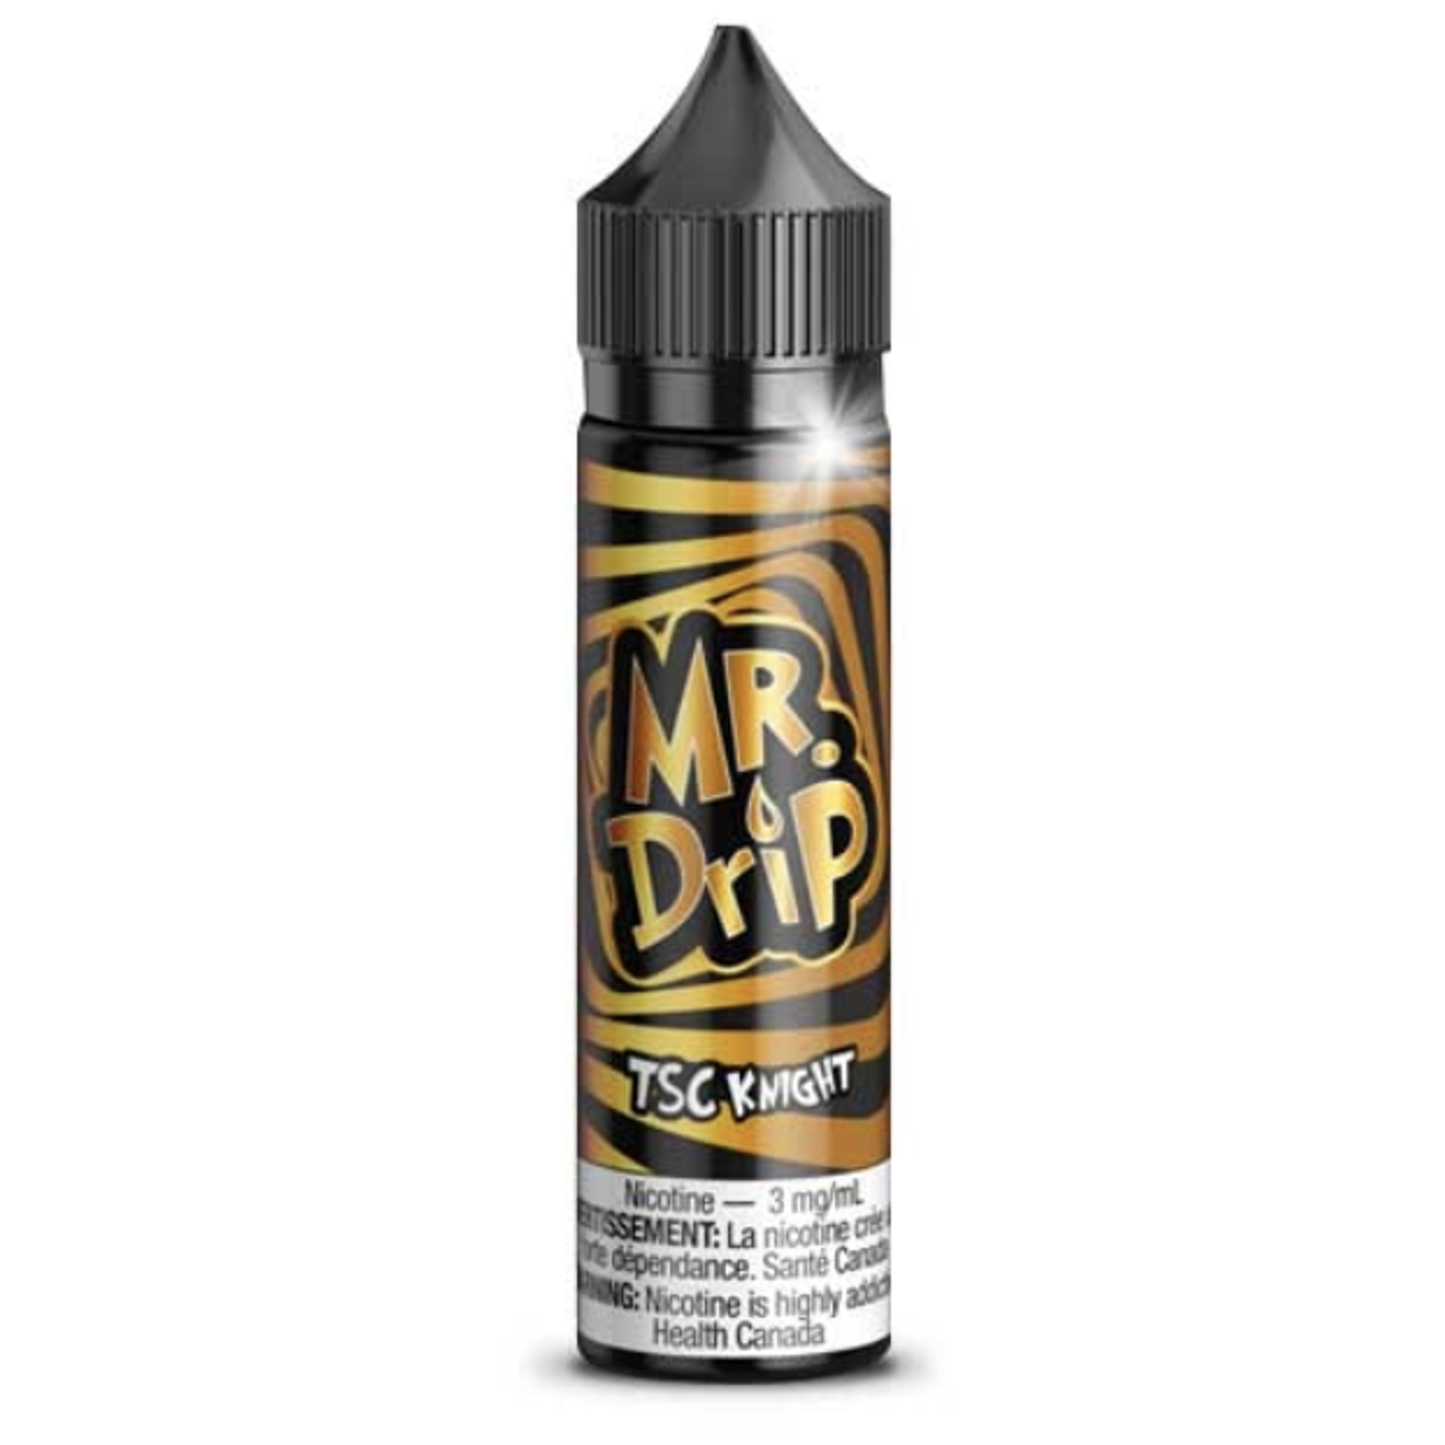 Mr. Drip - TSC Knight - 60 ml